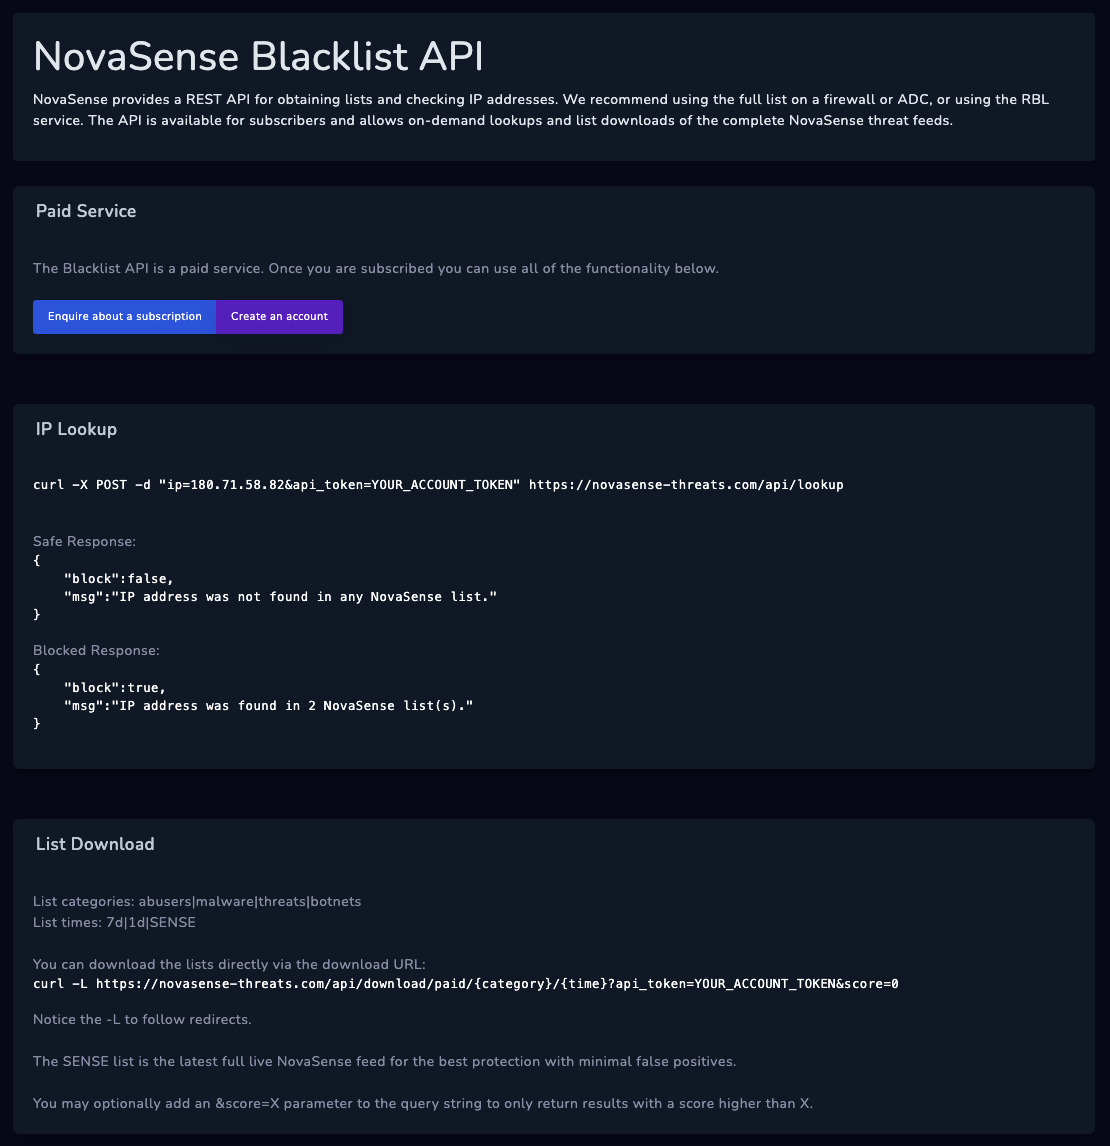 NovaSense Blacklist API